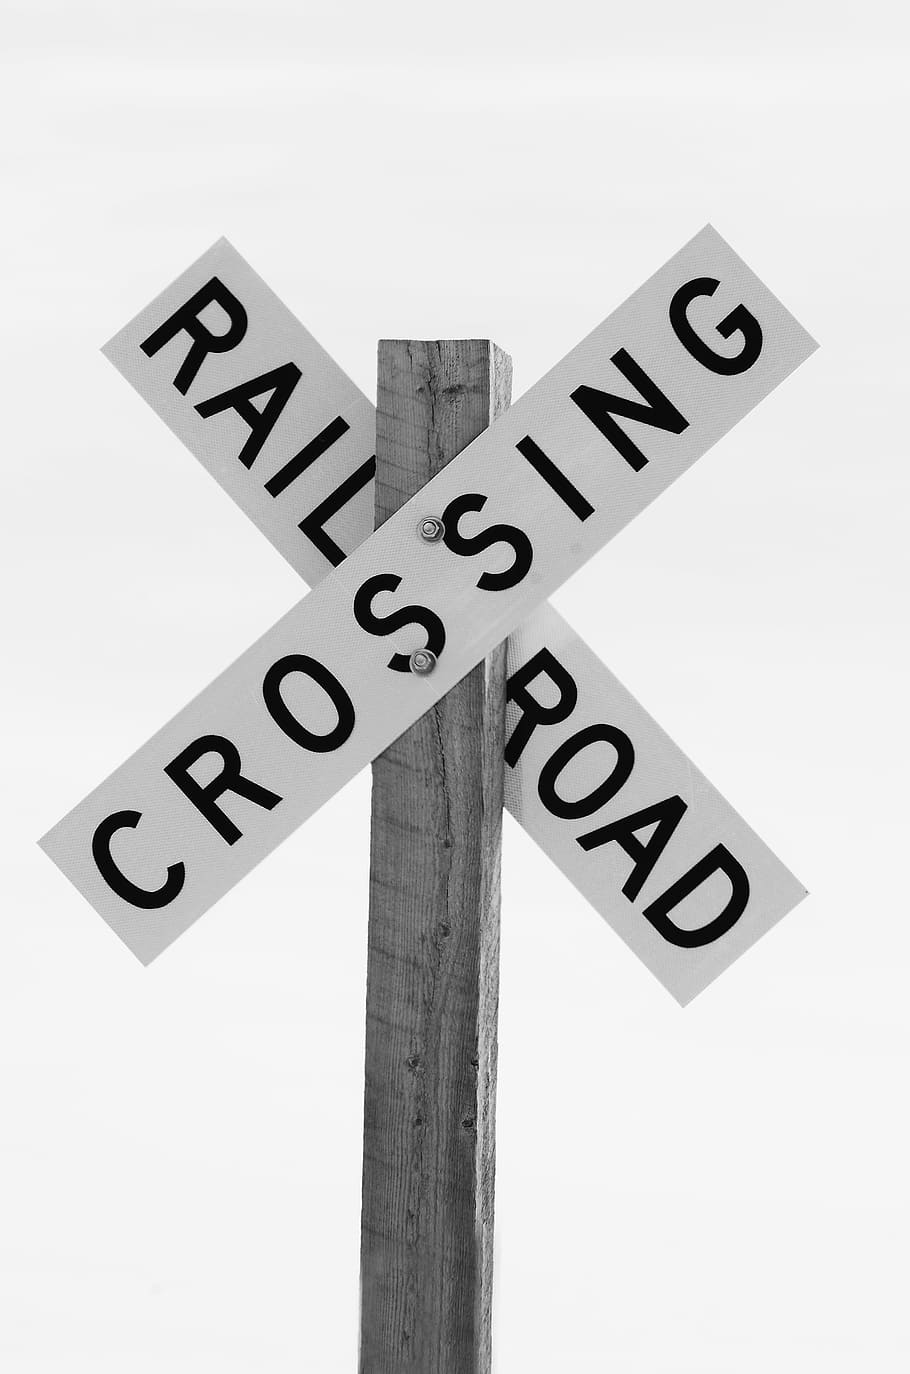 estrada de ferro, cruzamento, sinalização, Railroad Crossing, sinal, preto e branco, estrada, aviso, perigo, trilho